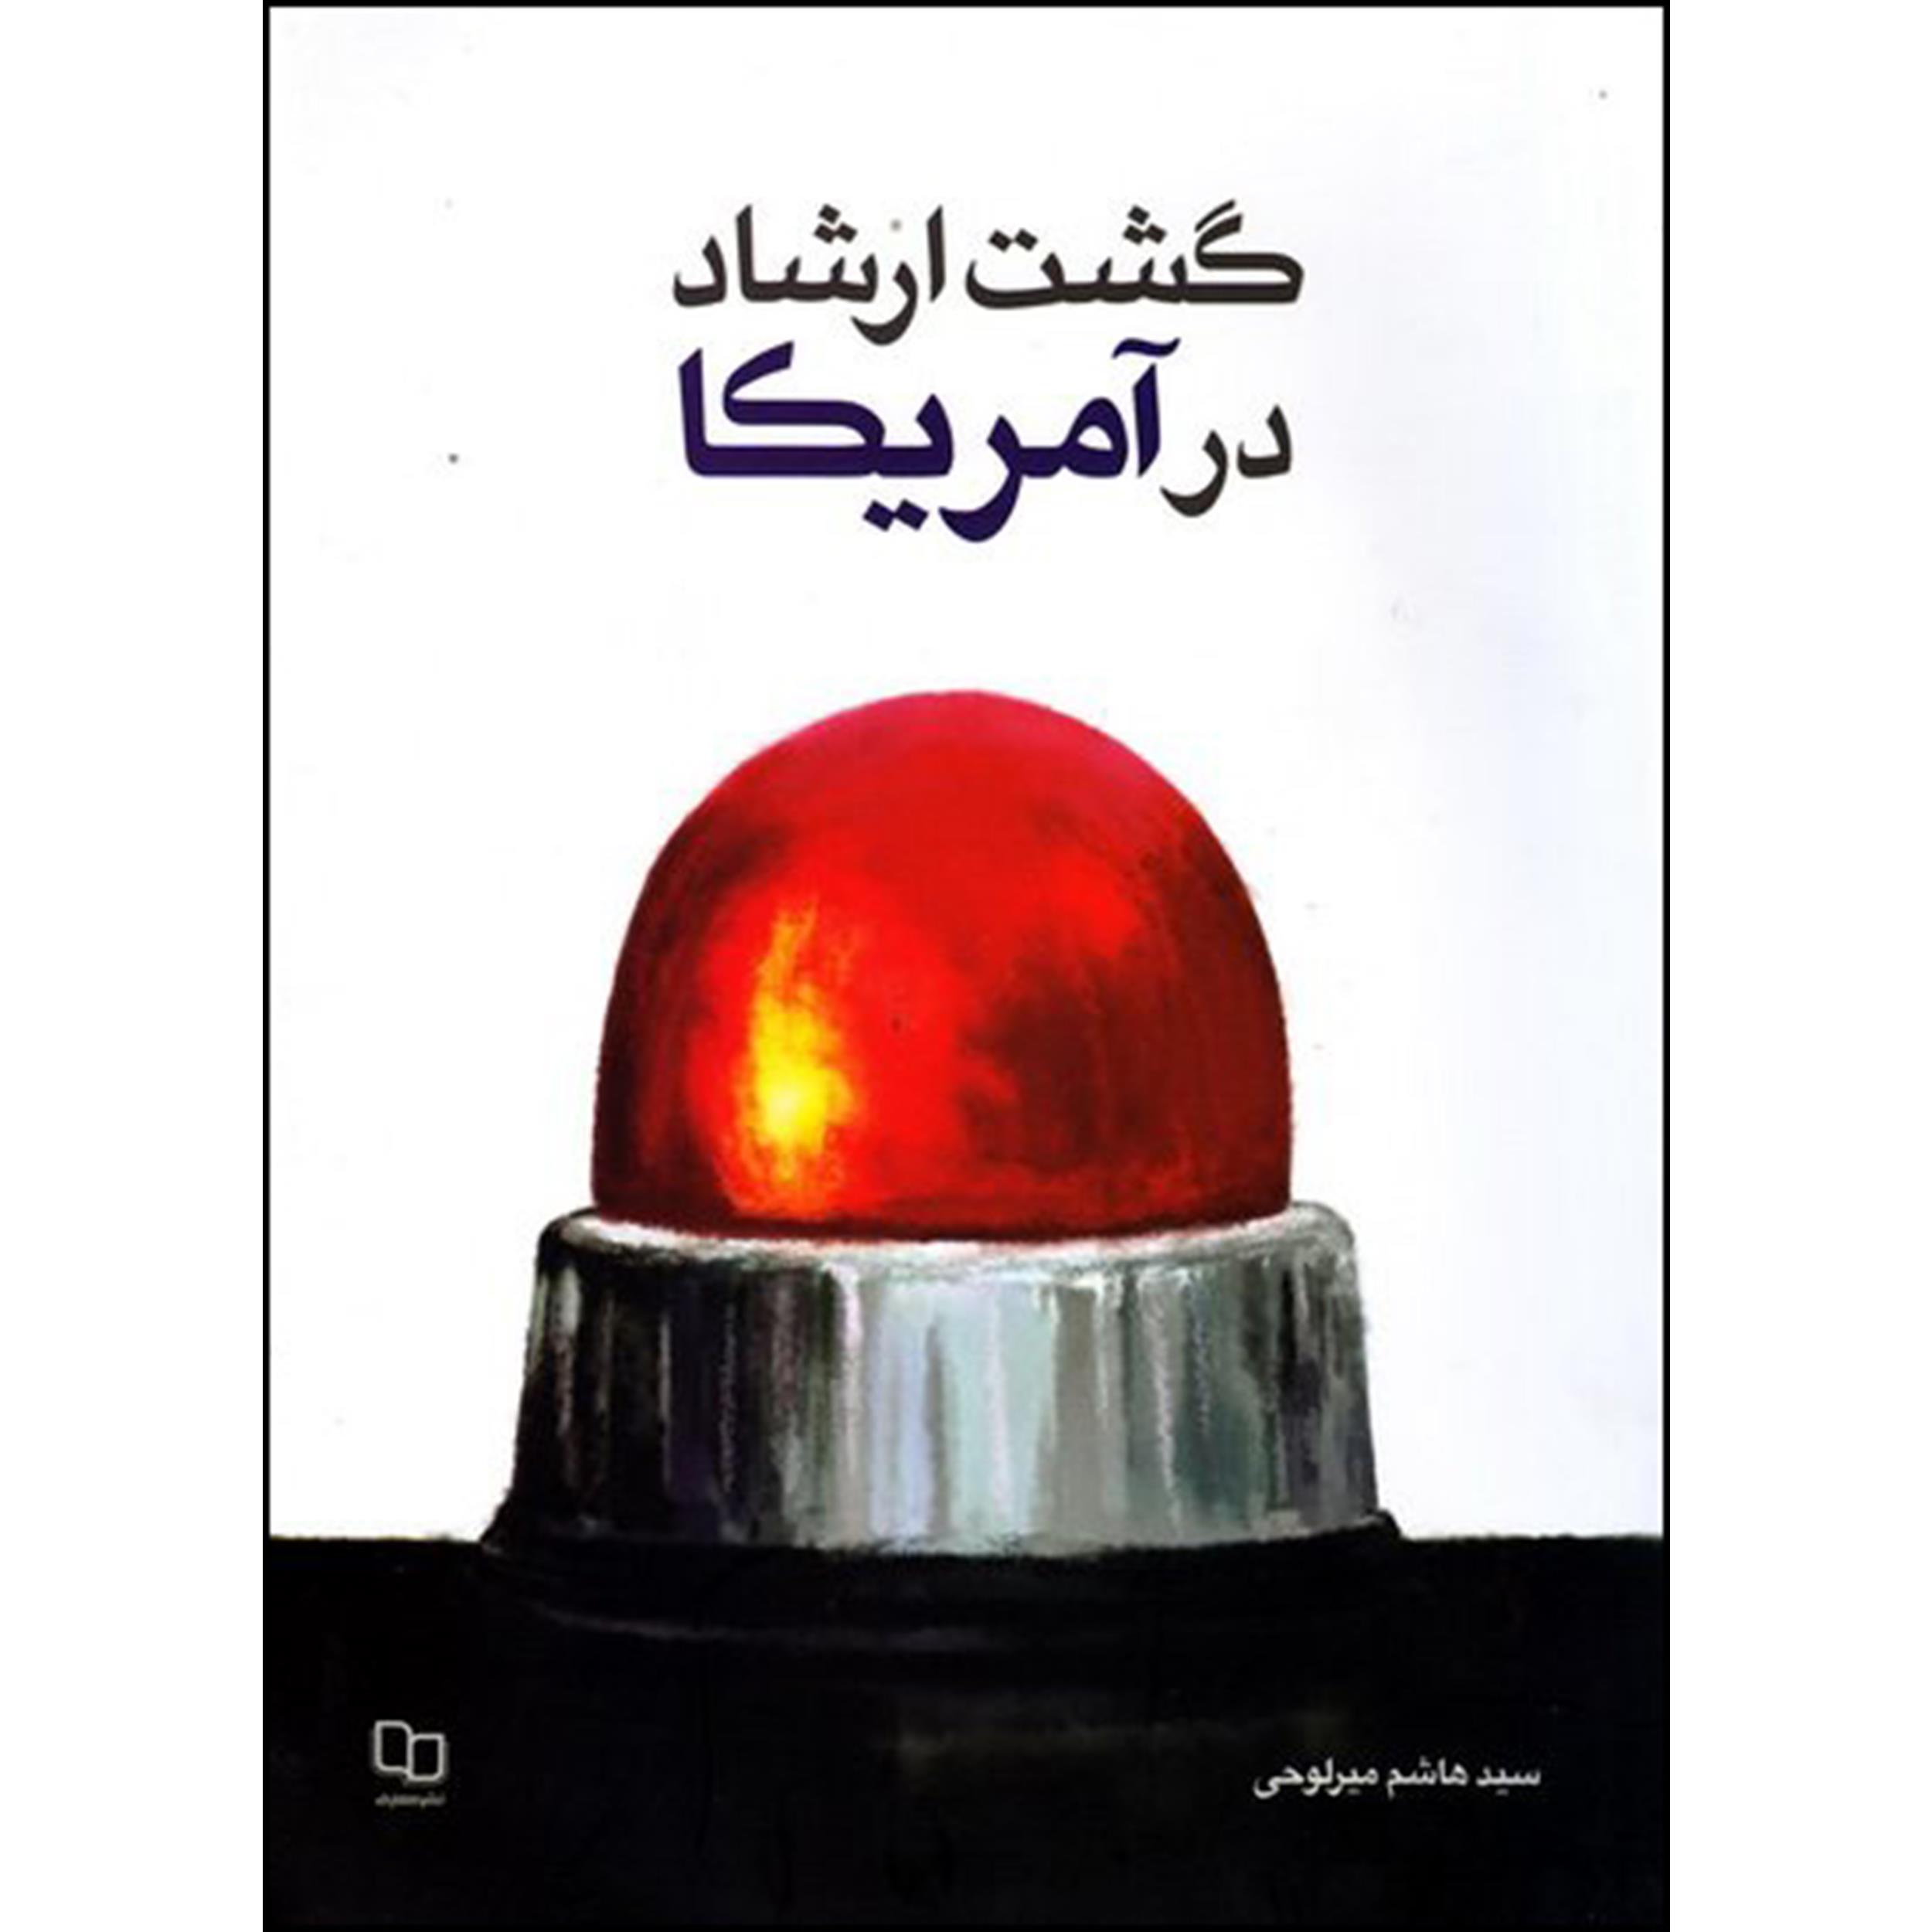 کتاب گشت ارشاد در آمریکا اثر سید هاشم میر لوحی نشر معارف